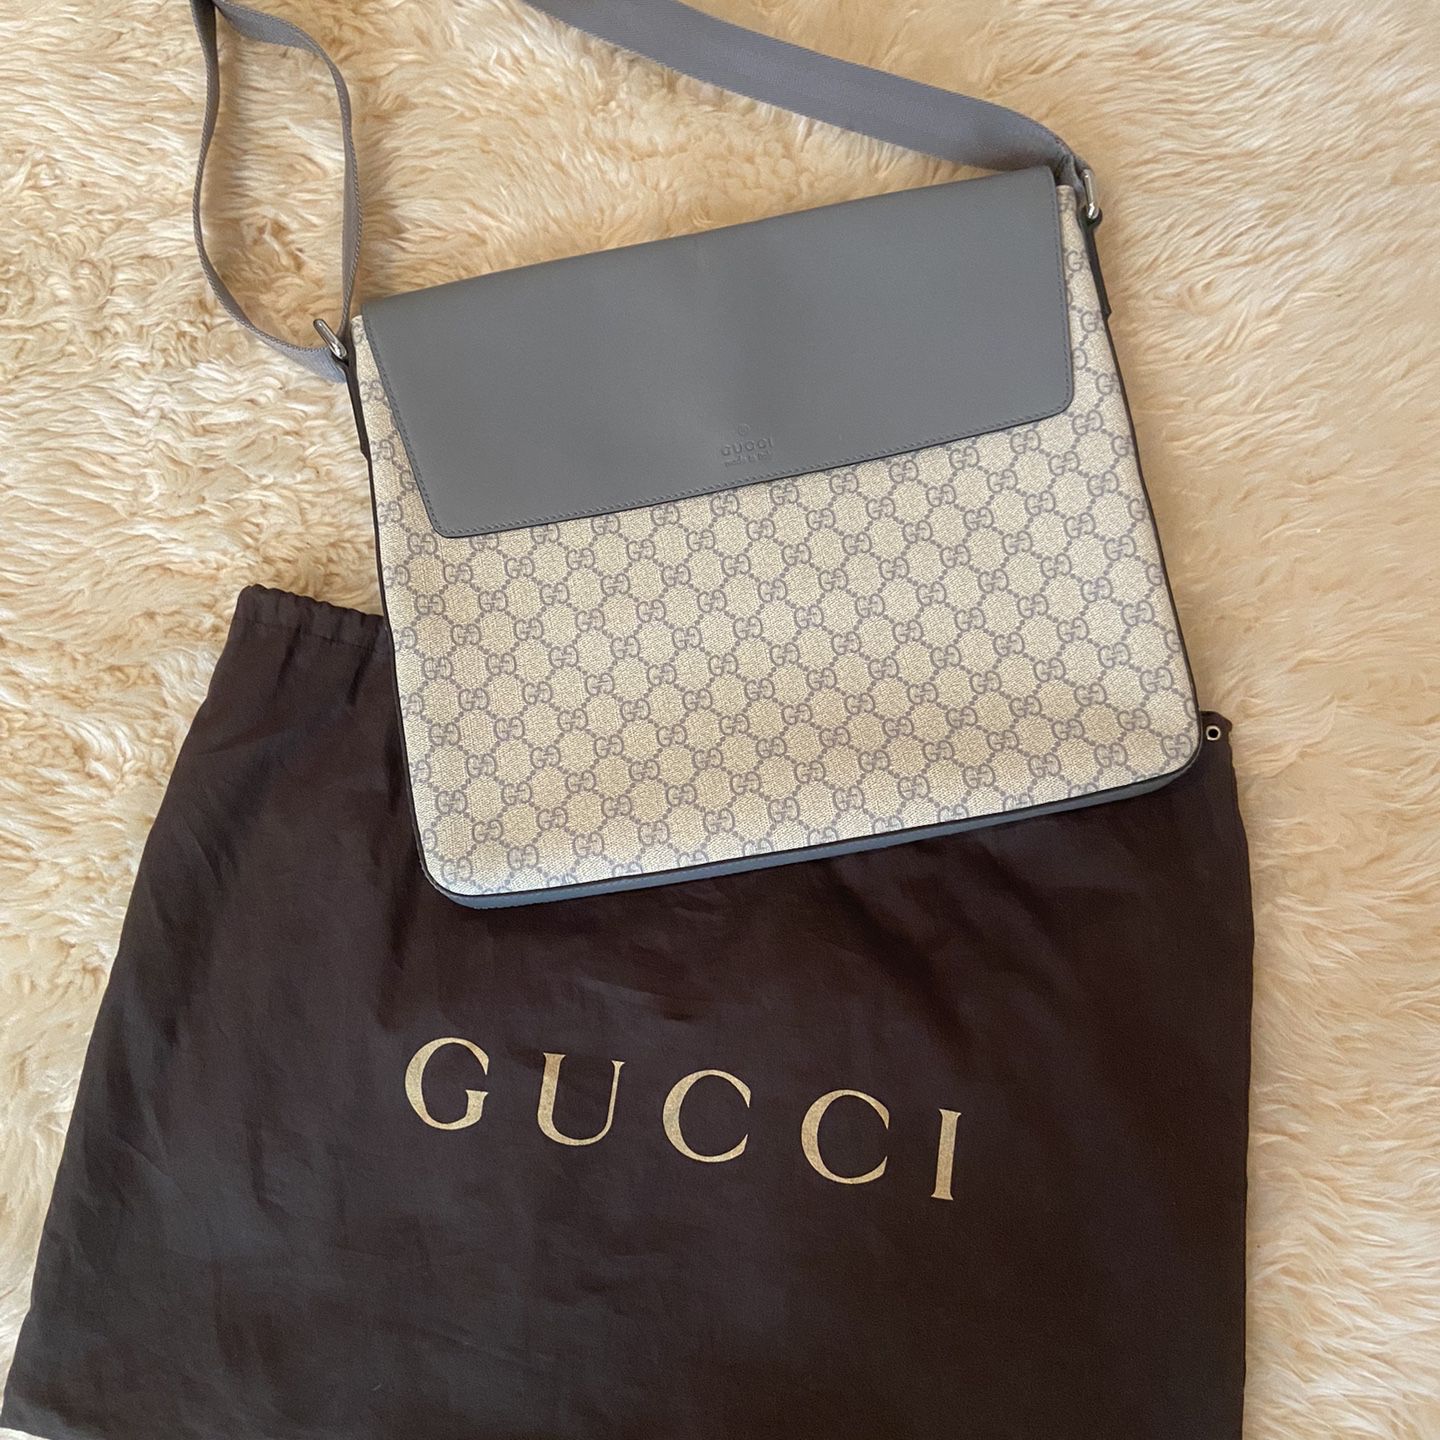 Gucci Laptop Bag Authentic